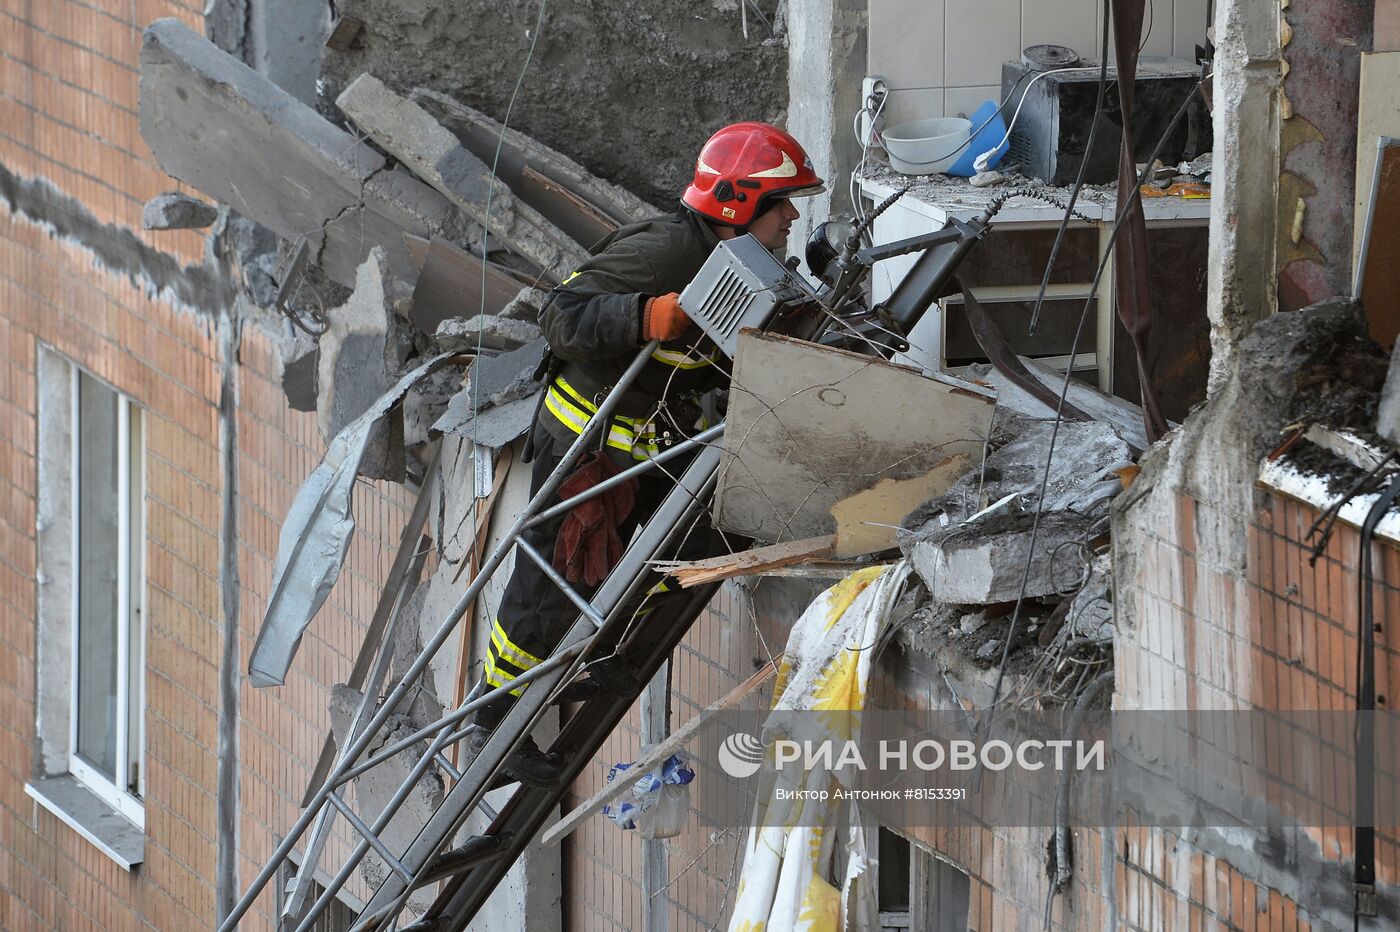 Последствия попадания снаряда ВСУ в жилой дом в Донецке